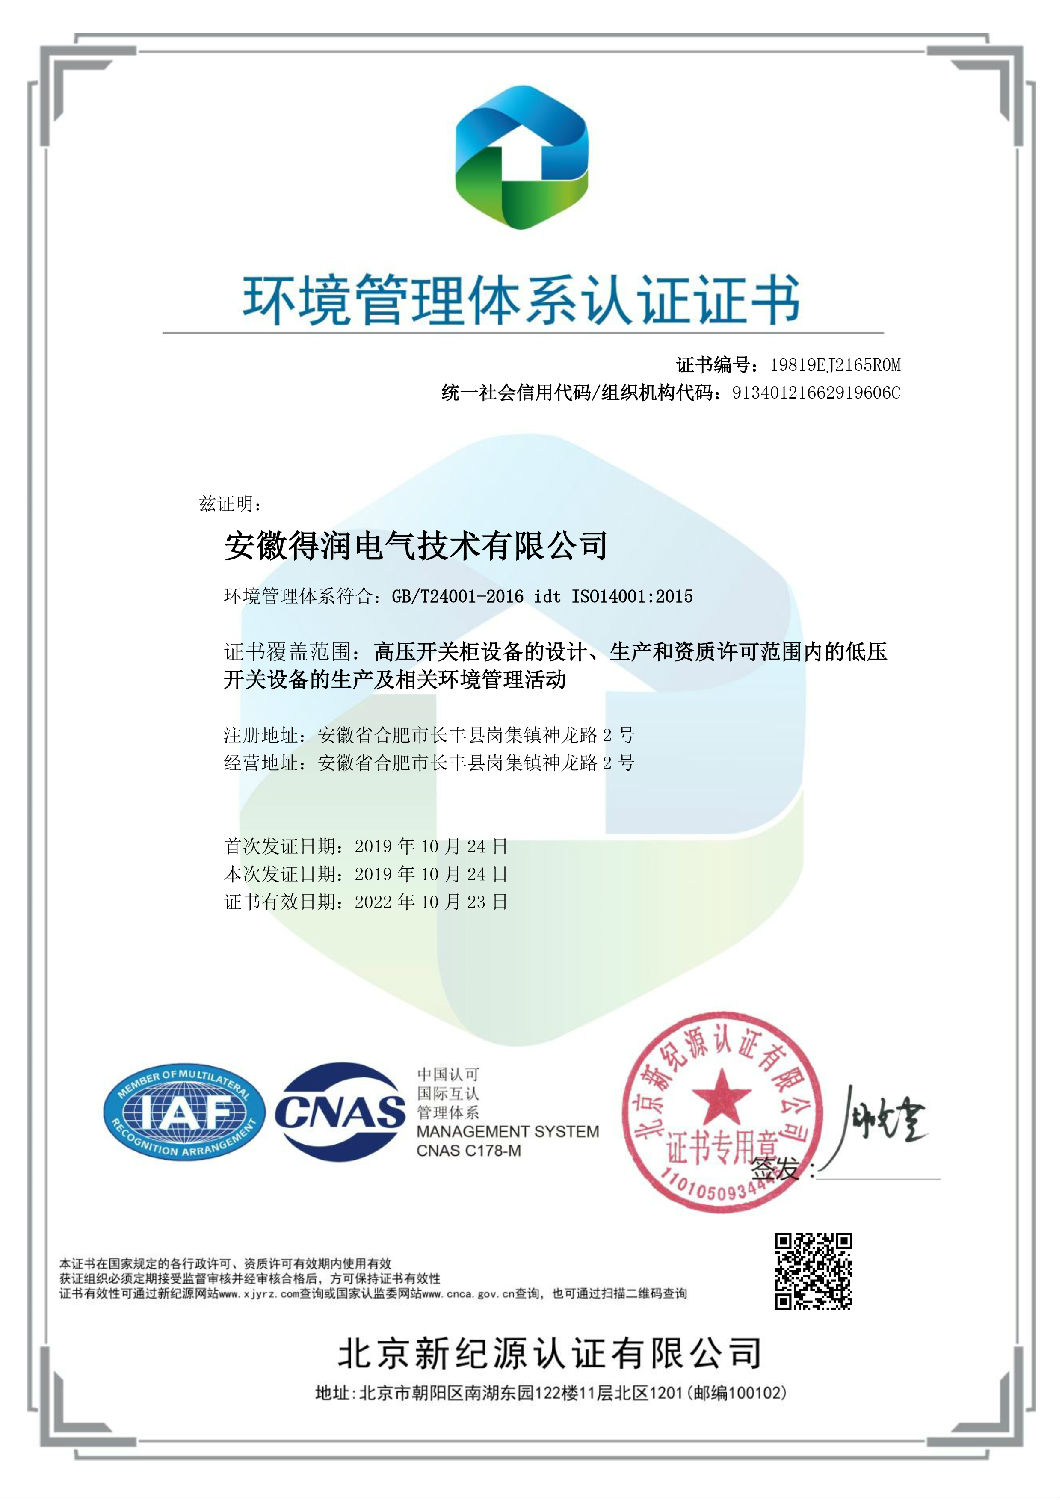 环境管理体系-EMS-中文证书.jpg